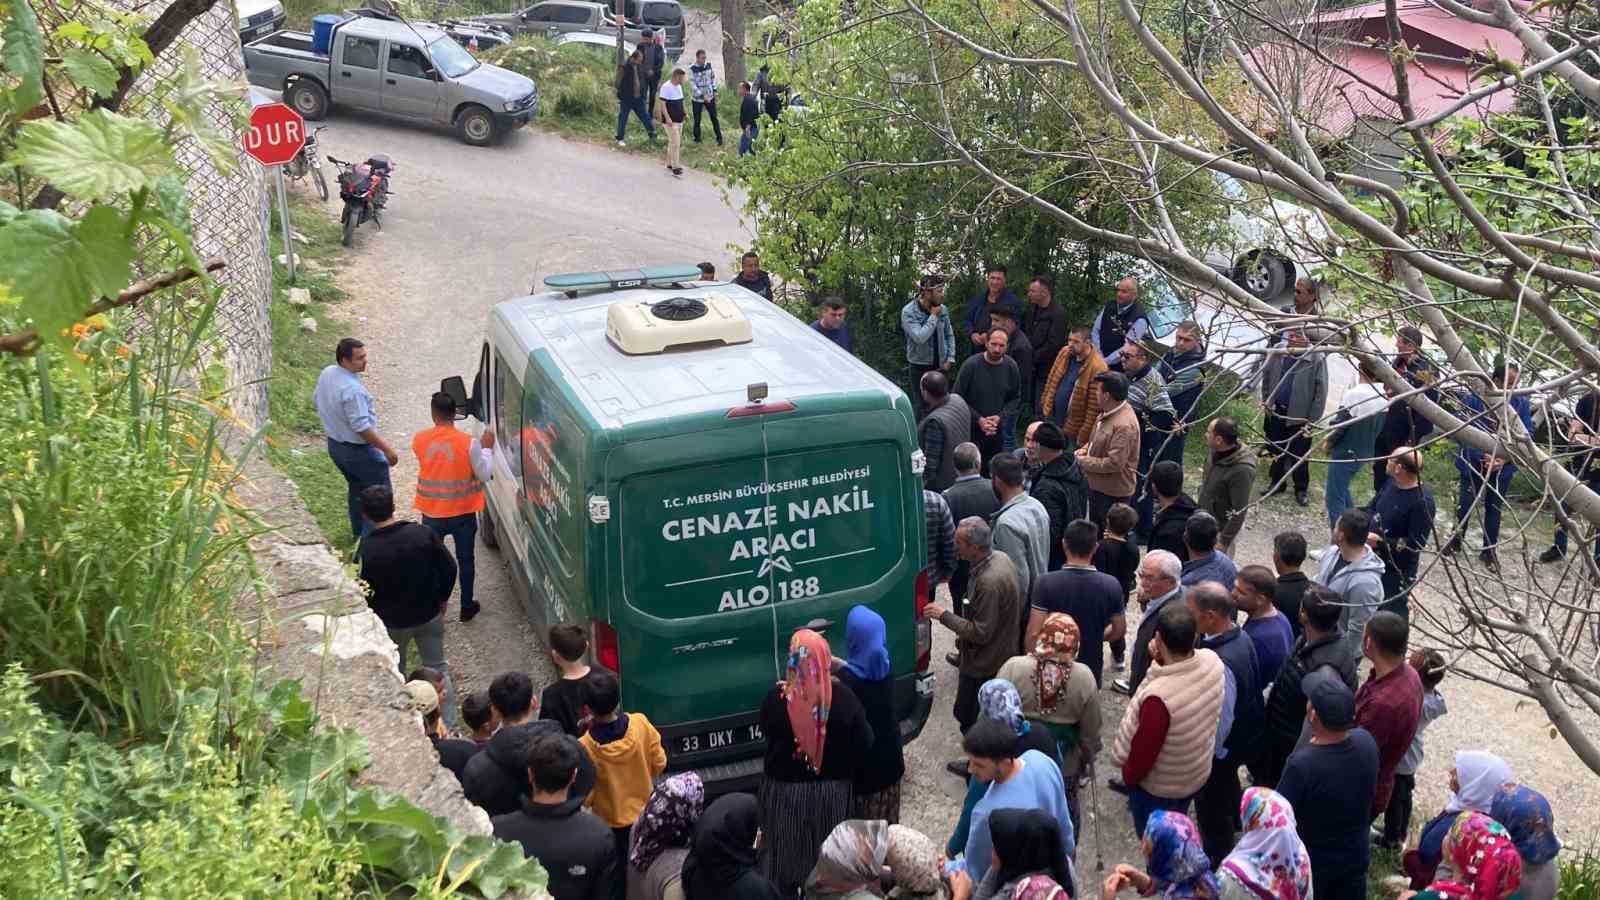 Mersin’de cinayete kurban giden 3 kişilik ailenin cenazeleri defin edildi
